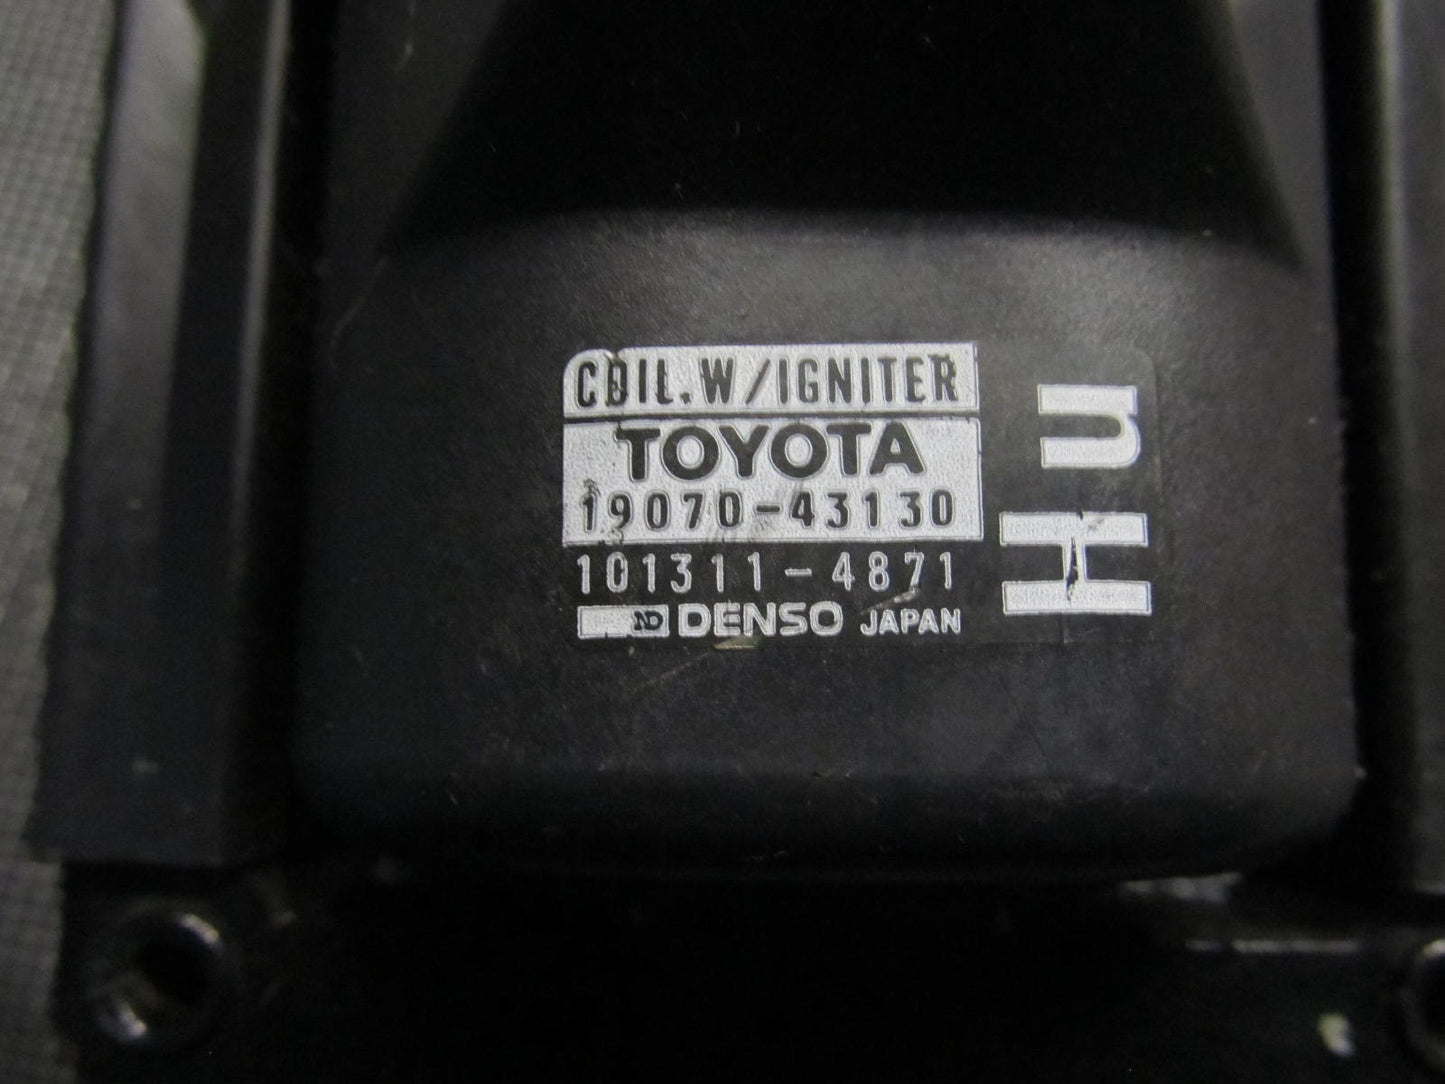 86 87 88 Supra Non Turbo OEM Ignition Coil 19070-43130